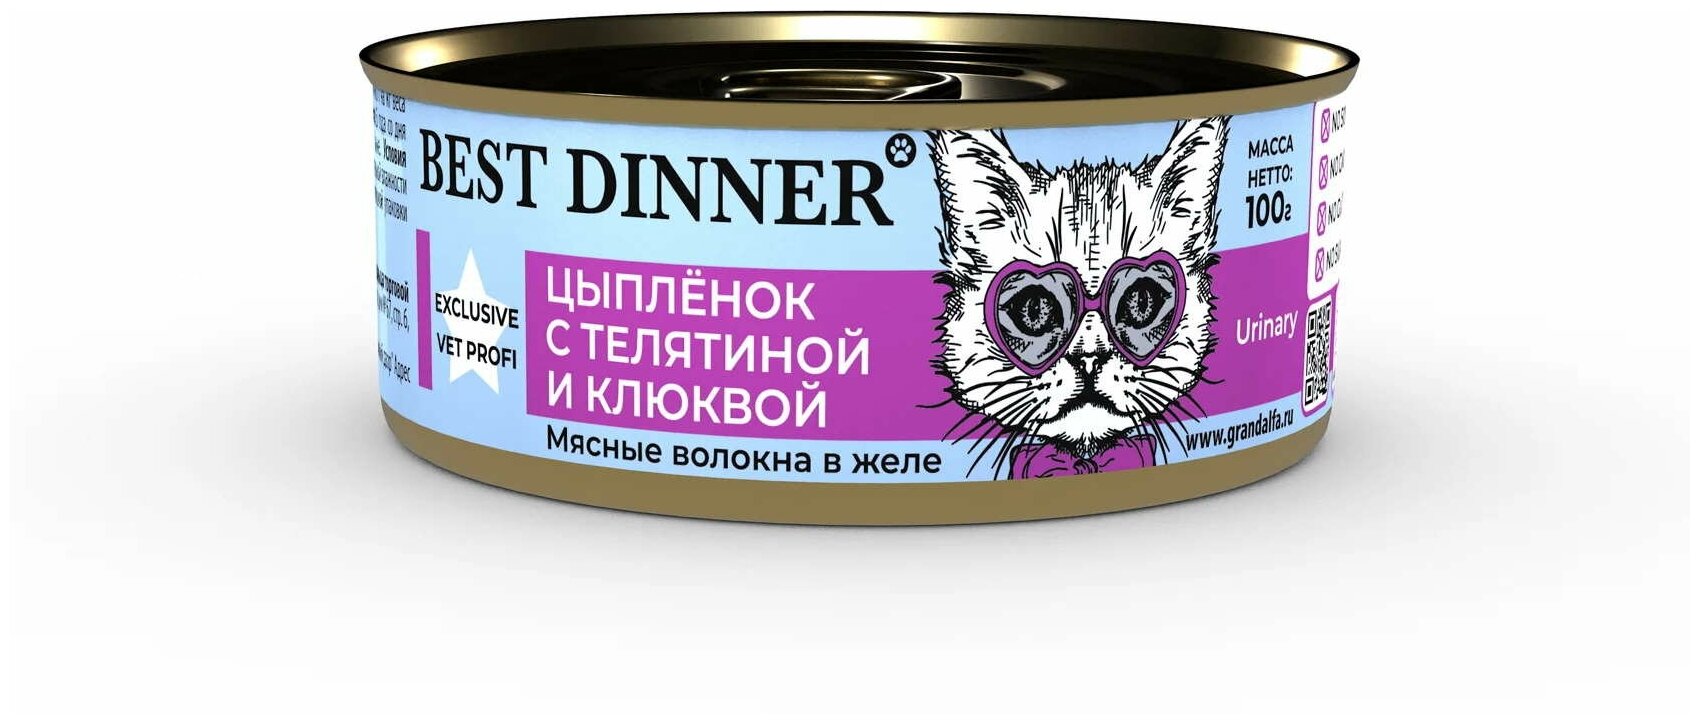 Влажный корм Best Dinner для взрослых кошек, Цыпленок с телятиной и клюквой, 100 г - фото №1